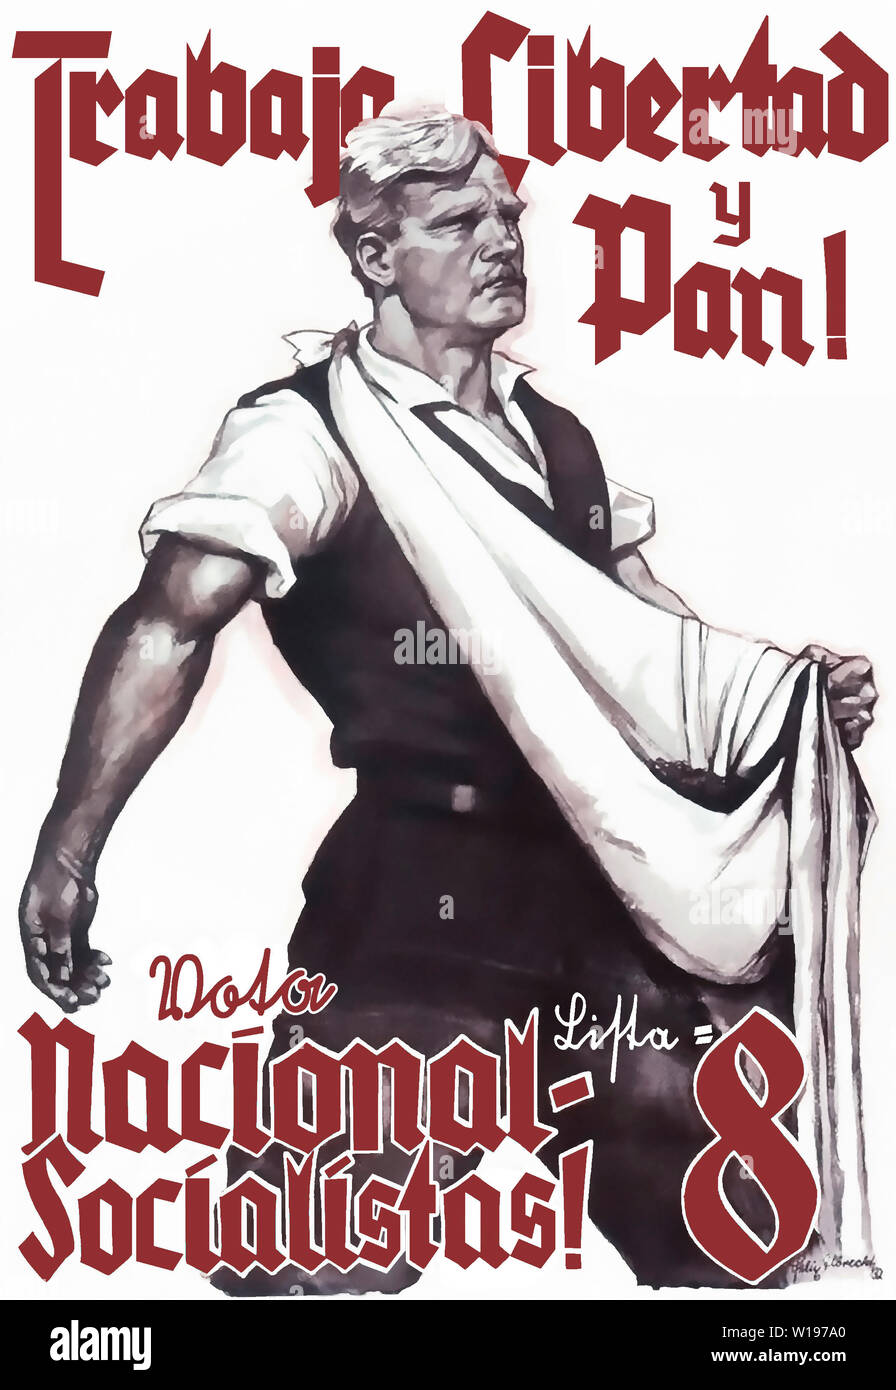 Arbeit, Freiheit und Brot! Wählt Liste 8 National-Sozialisten! (Auf Spanisch übersetzt) Stockfoto